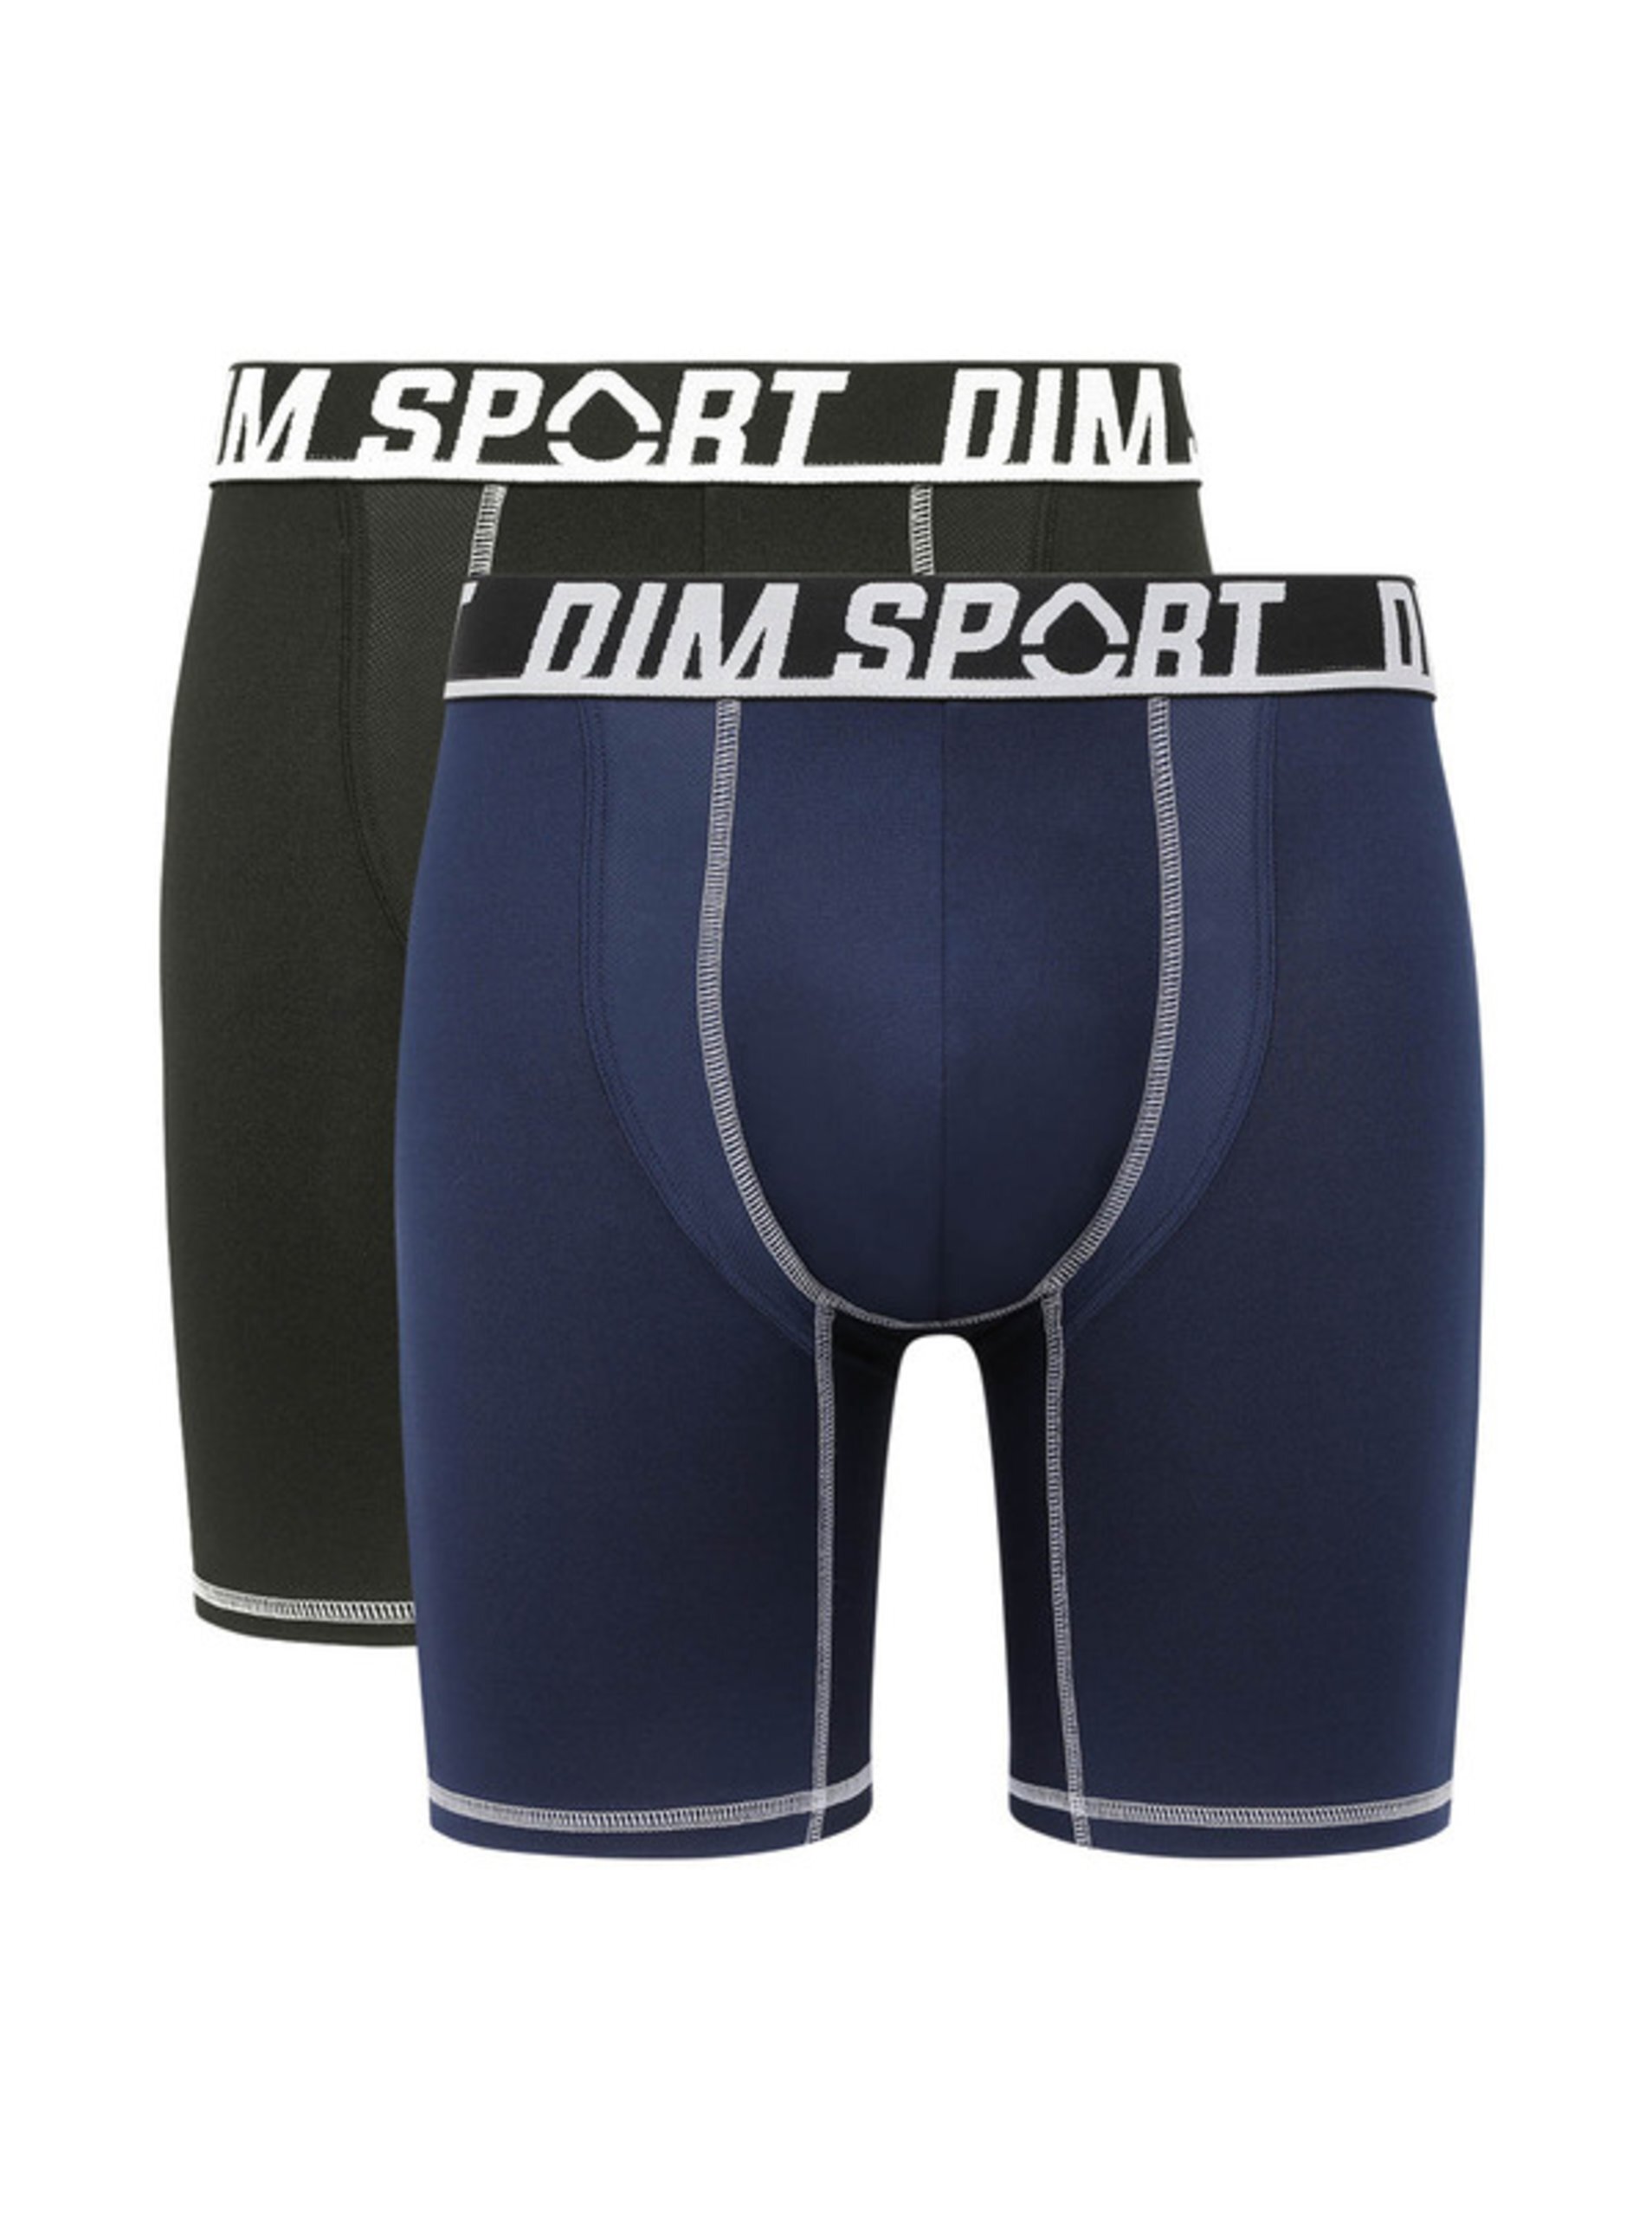 E-shop Sada dvou pánských sportovních boxerek v černé a tmavě modré barvě DIM SPORT LONG BOXER 2x